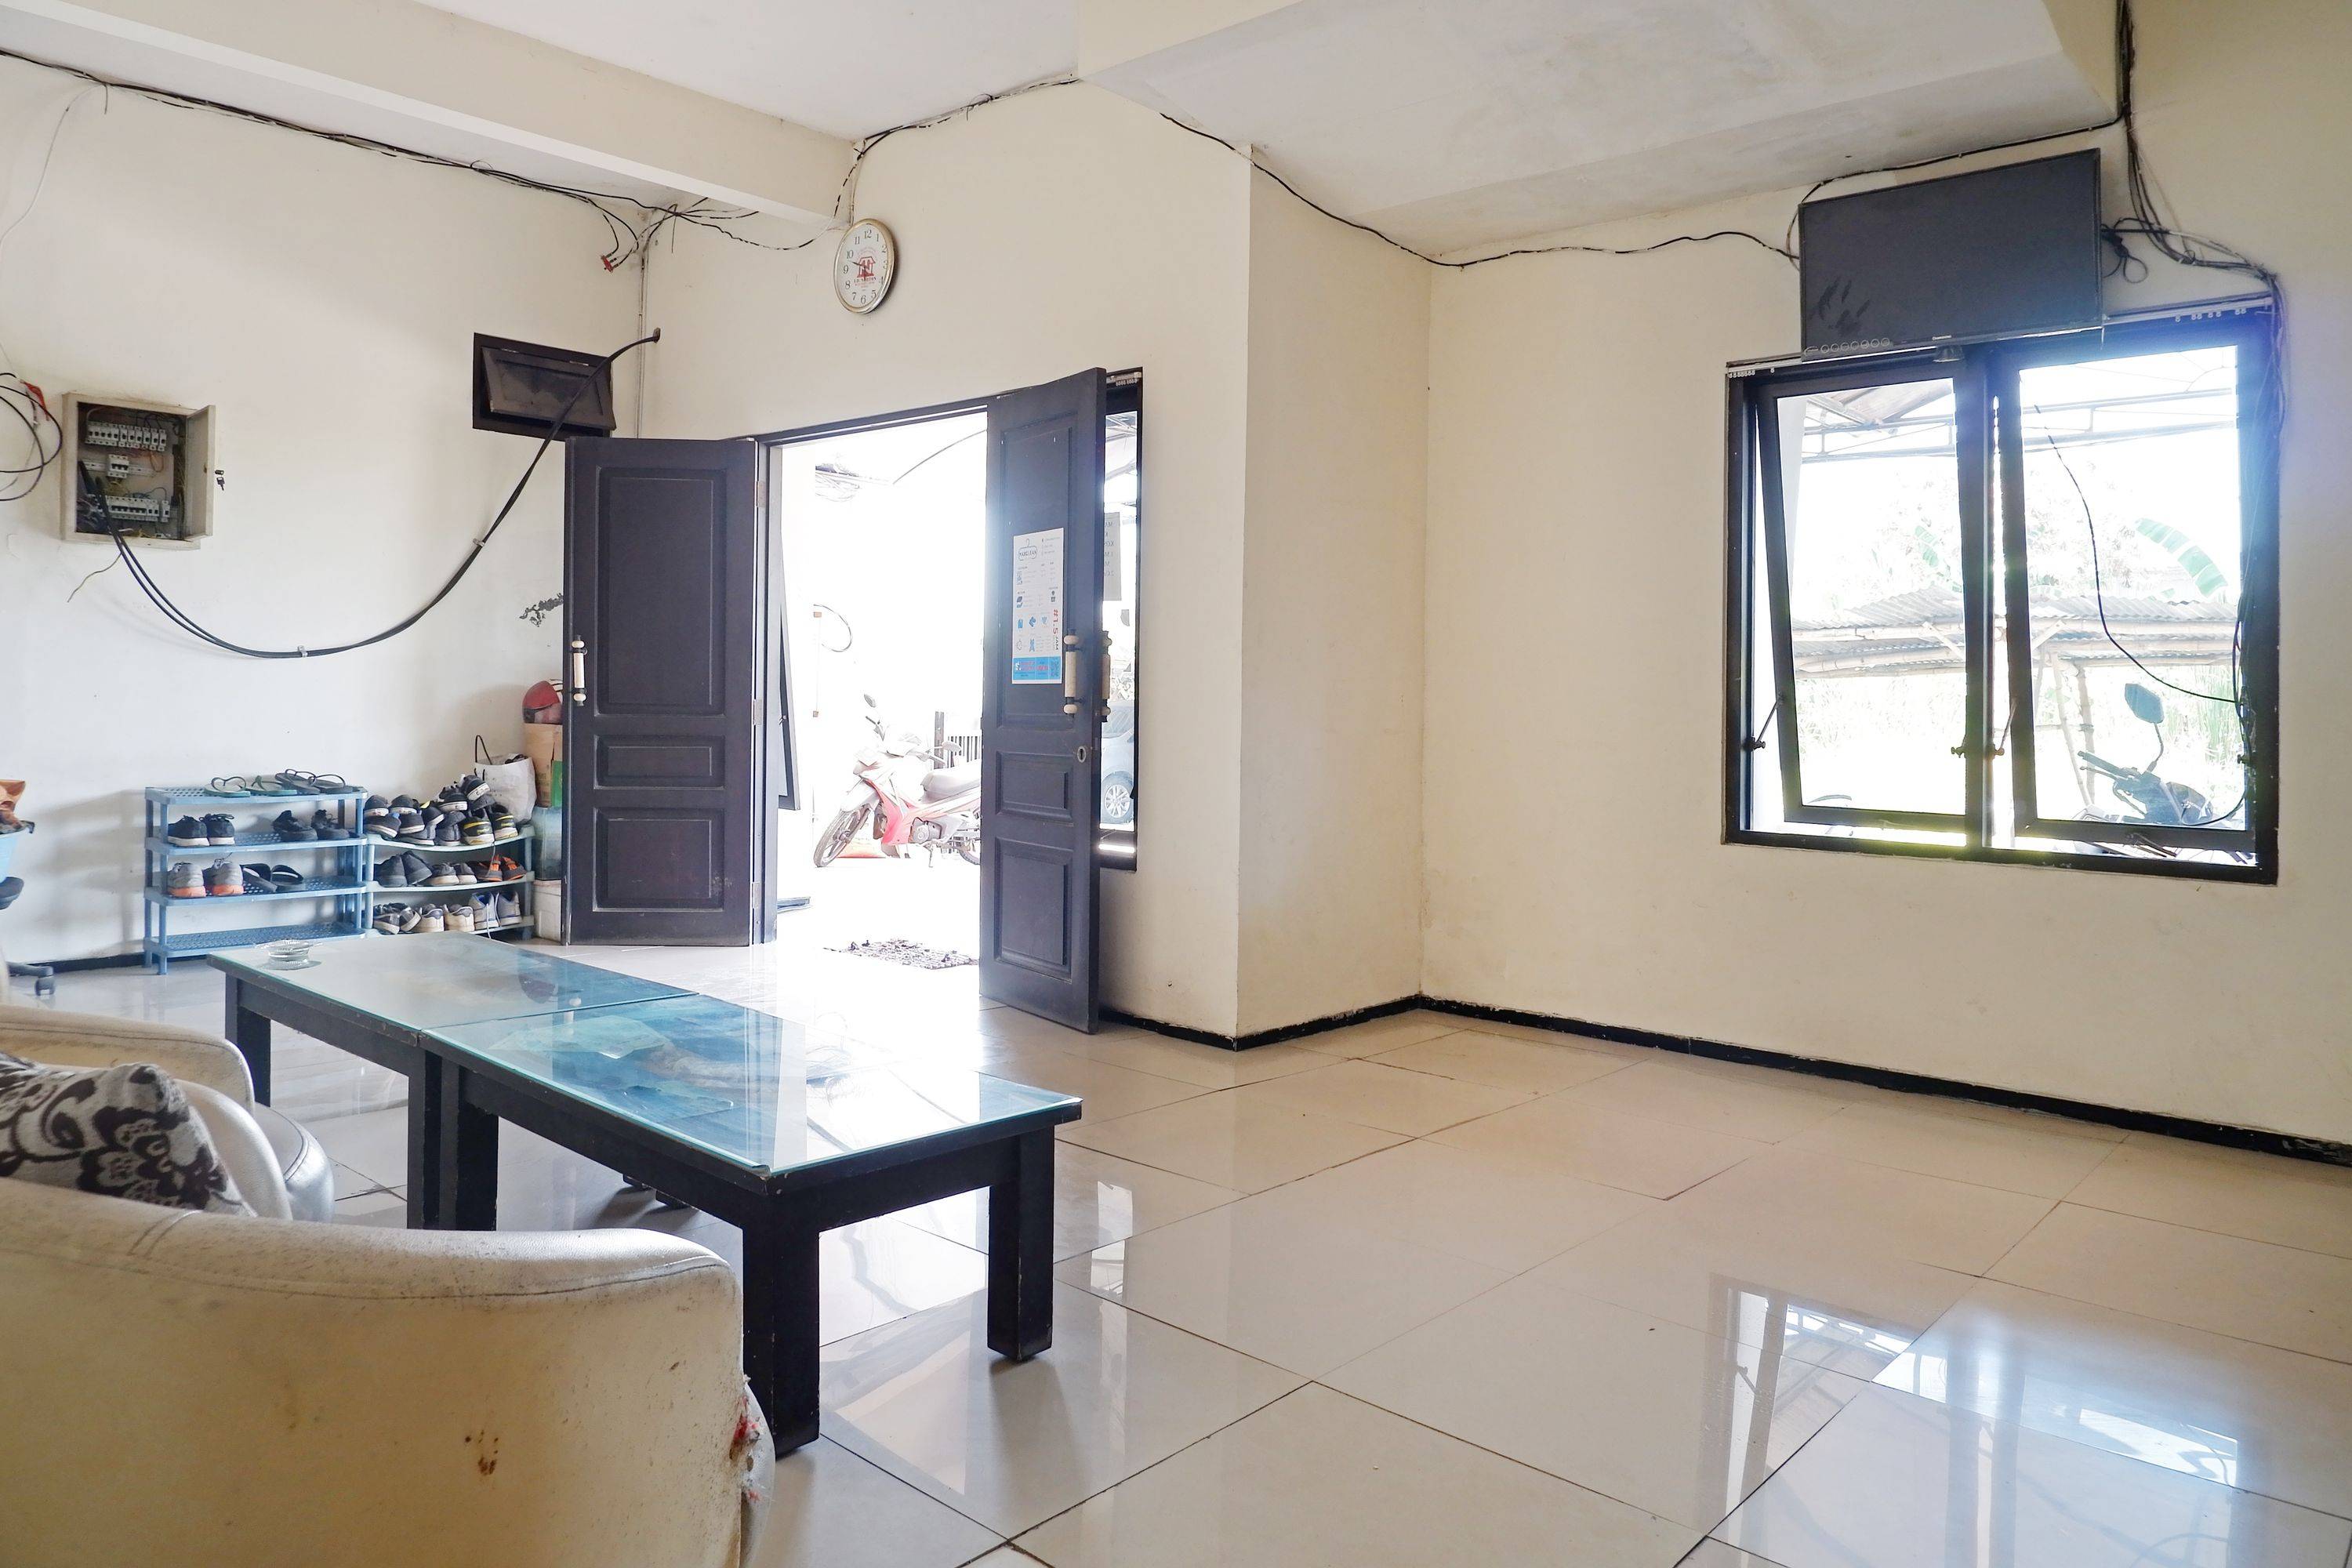 AB11 Residence Siwalankerto Surabaya Gayungan Dukuh Menanggal